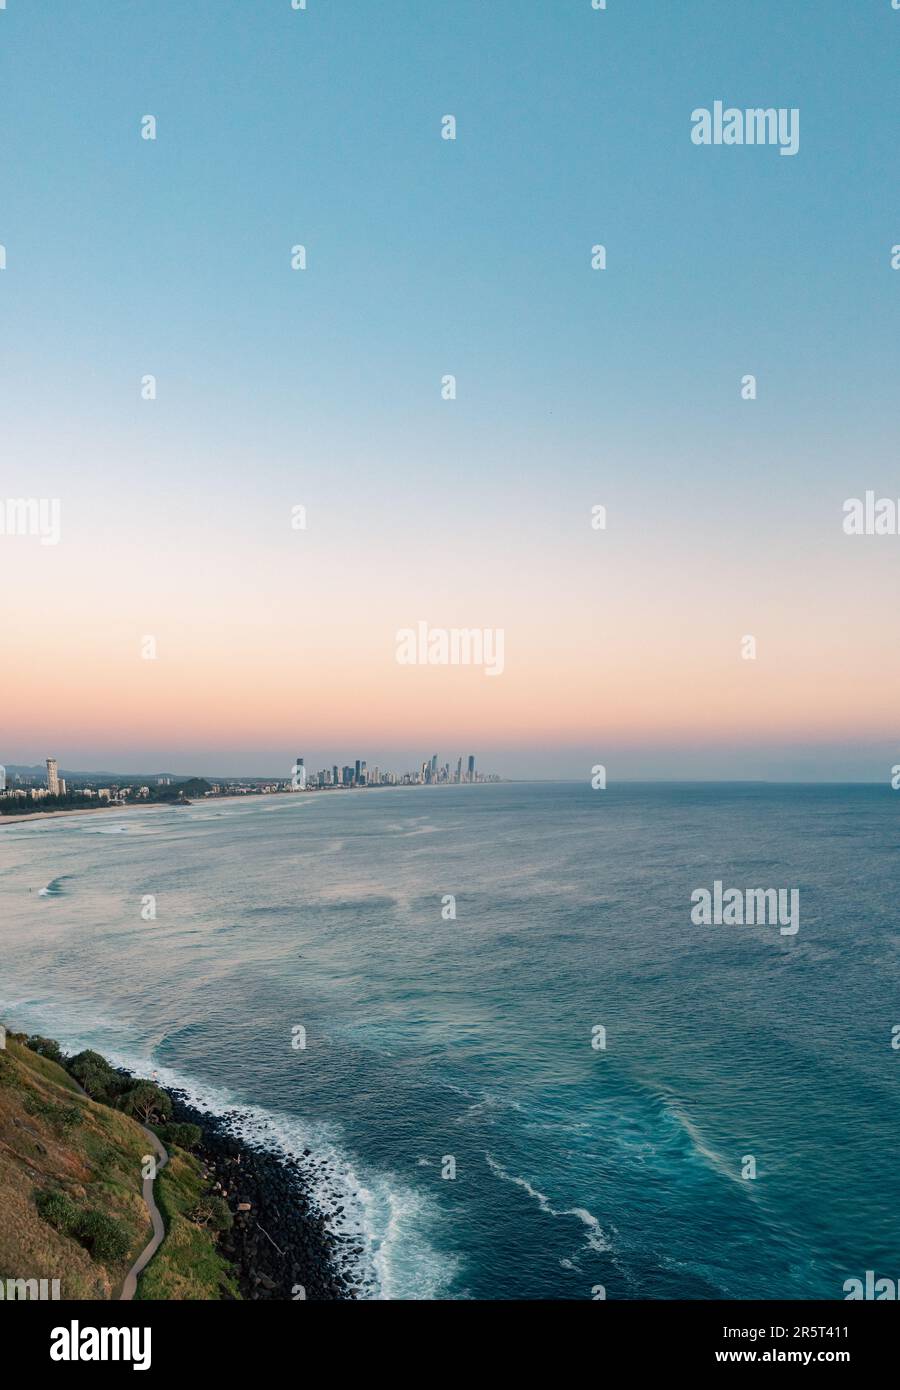 Ein Luftblick auf die geschäftige Skyline der Stadt mit Blick auf die Küste, mit üppigen grünen Hügeln, die hinunter zum glitzernden blauen Ozean führen Stockfoto